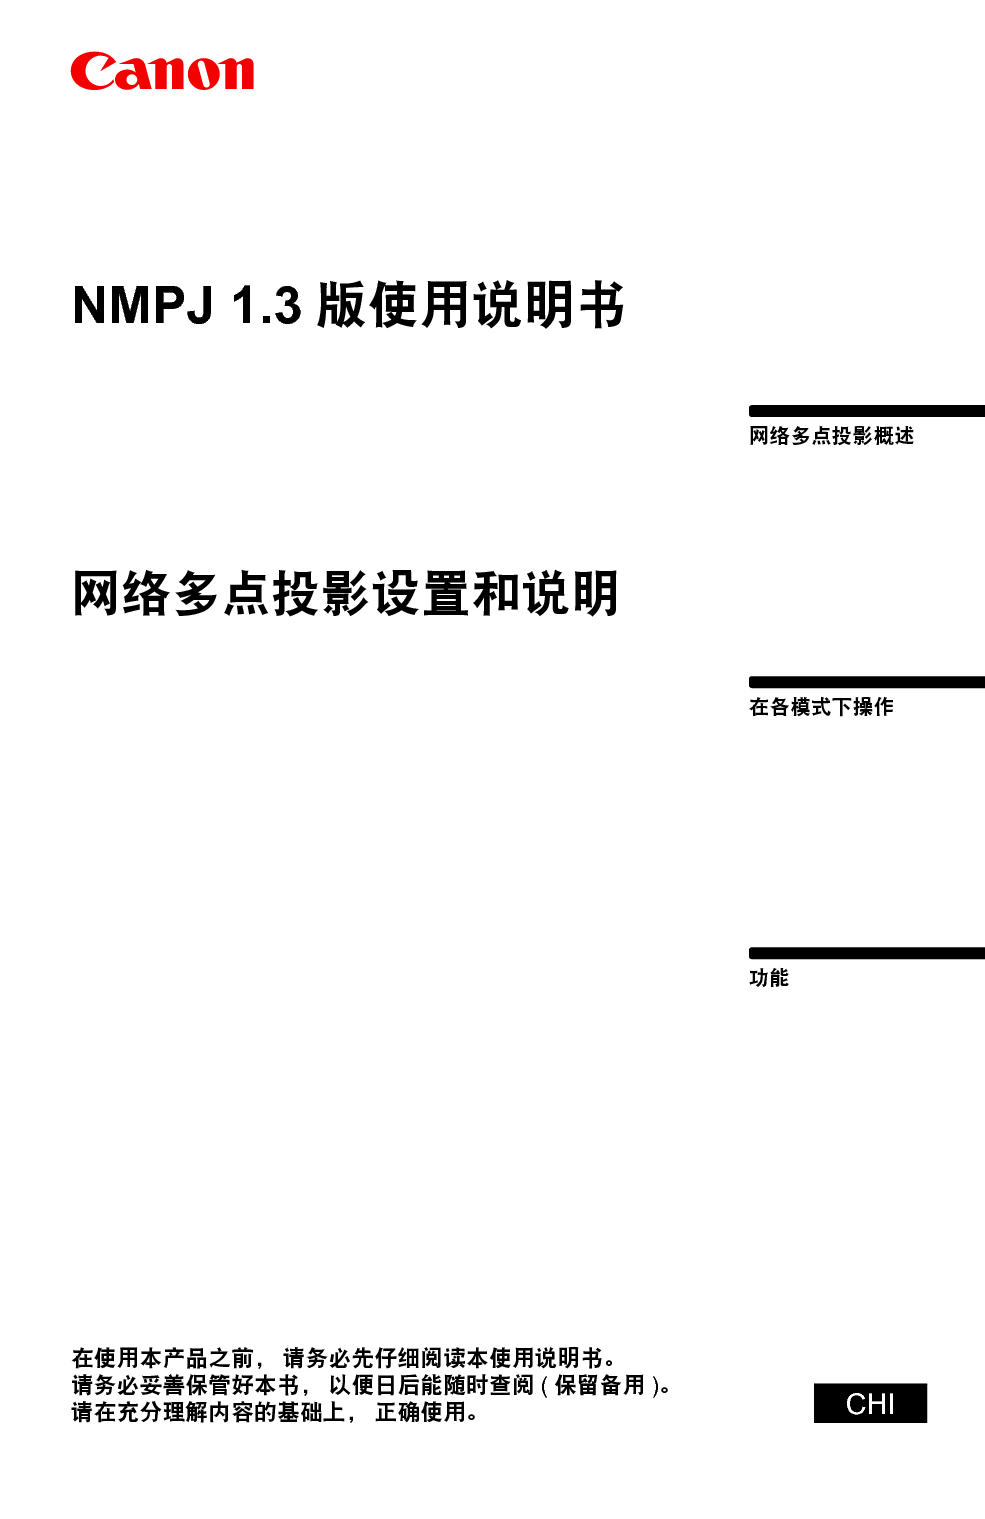 佳能 Canon NMPJ 1.3 网络多点投影 使用说明书 封面